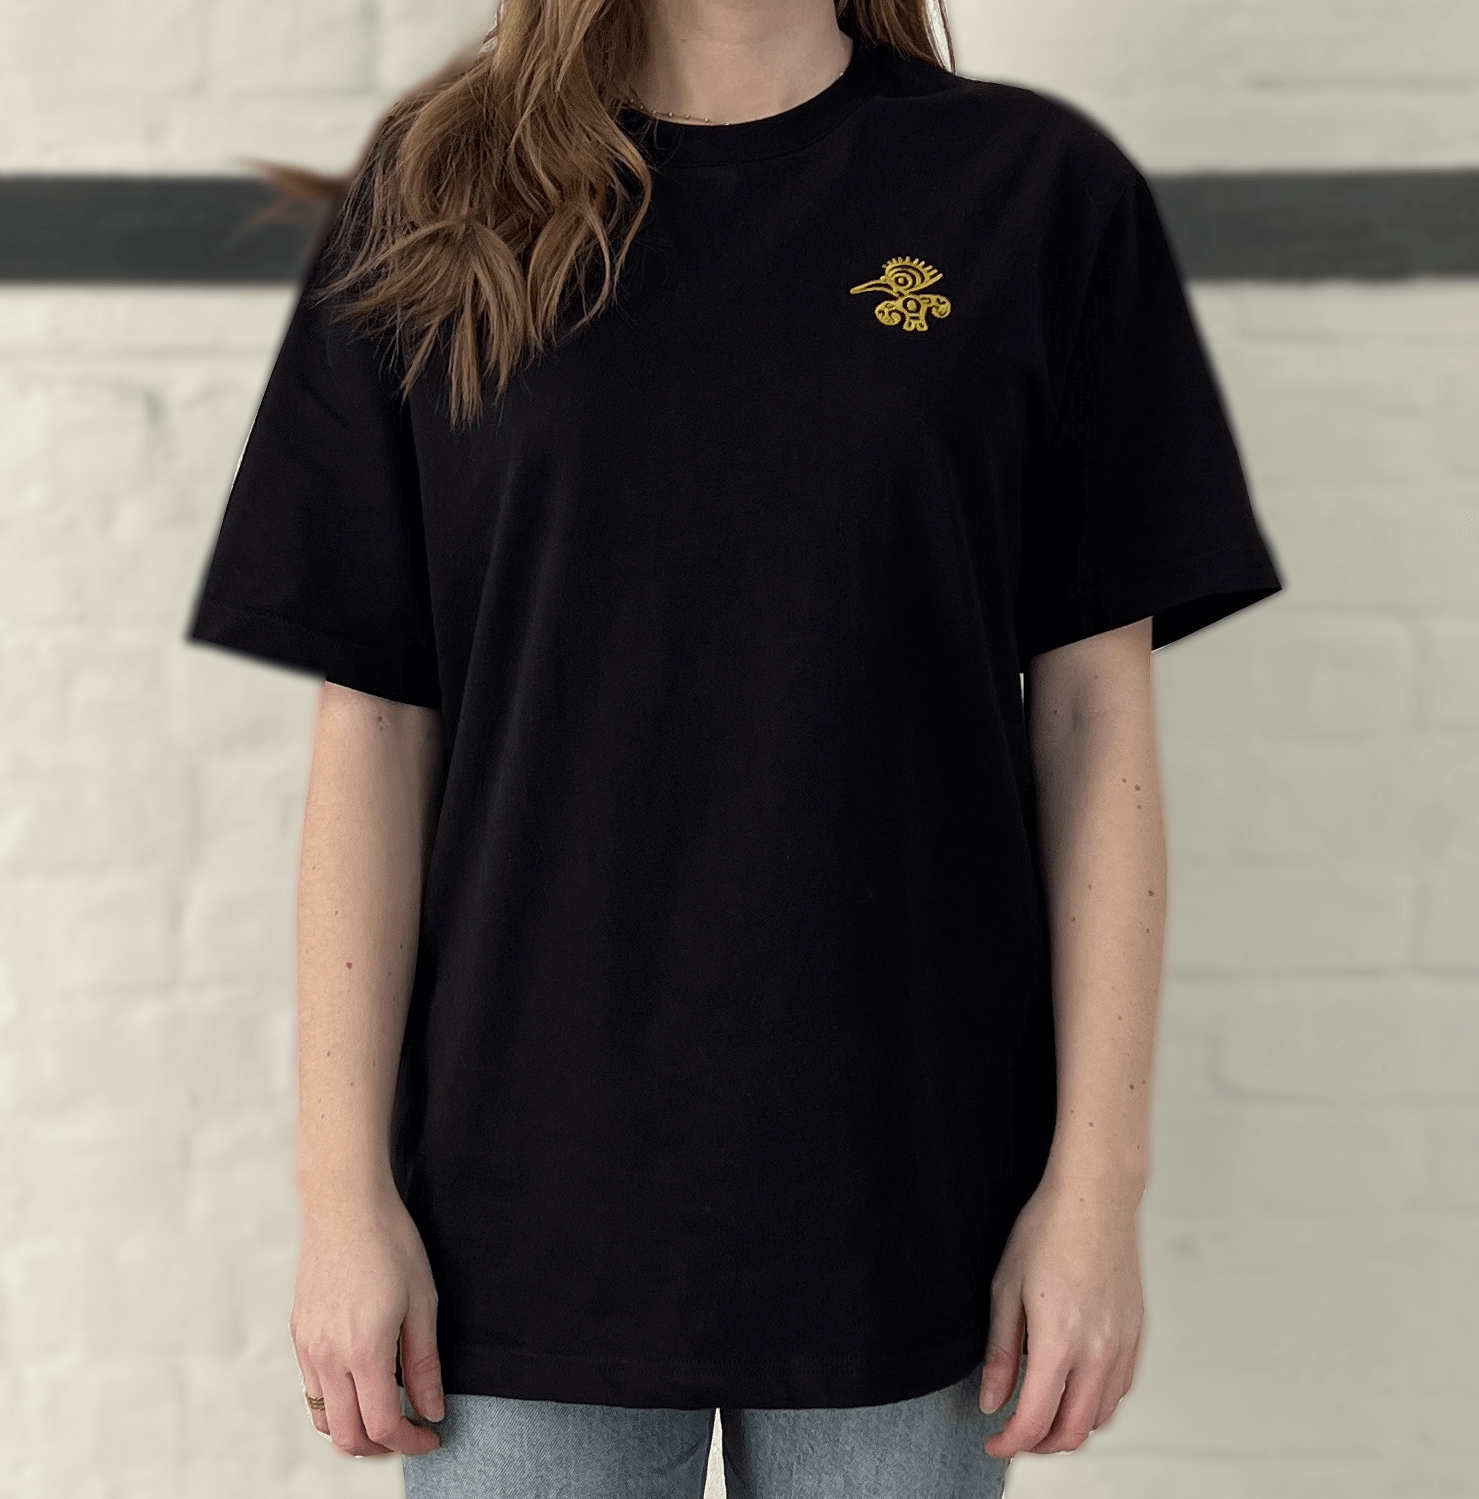 Schwarzes T-Shirt mit goldenem Mio Mio Tukan eingestickt auf der linken Brust